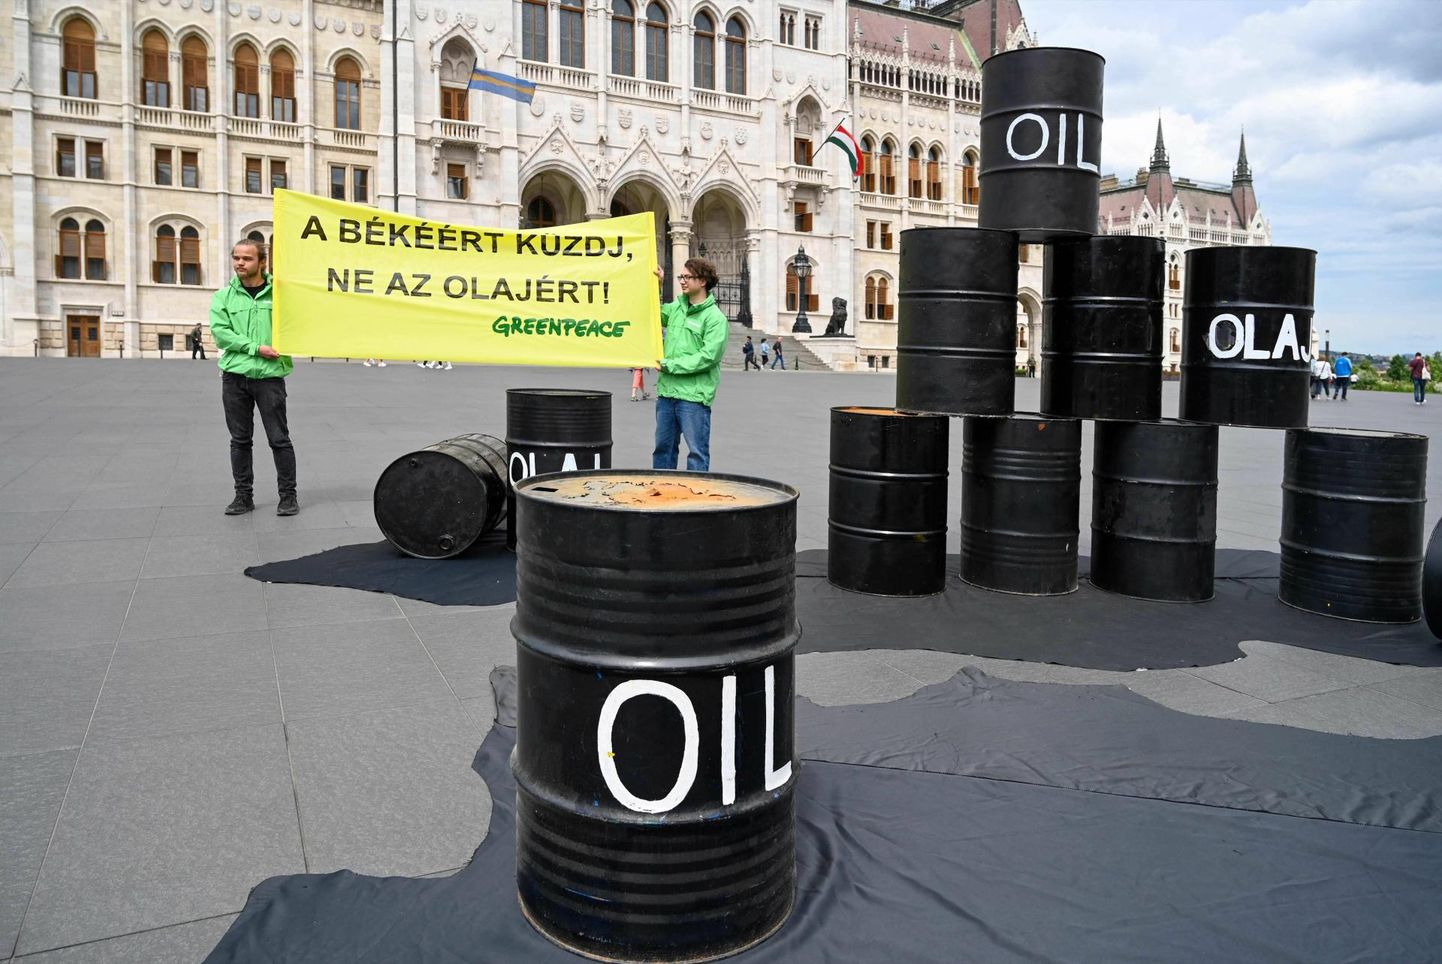 Ungari parlamendi ees on Greenpeace avaldamas
naftatünnidega meelt Ungari valitsuse otsuse vastu blokeerida naftasanktsioonid Venemaa vastu 30. mail. Hiljem
Ungari oma blokeeringust küll loobus, kuid jagelemine on jätkunud esindajate tasemel.